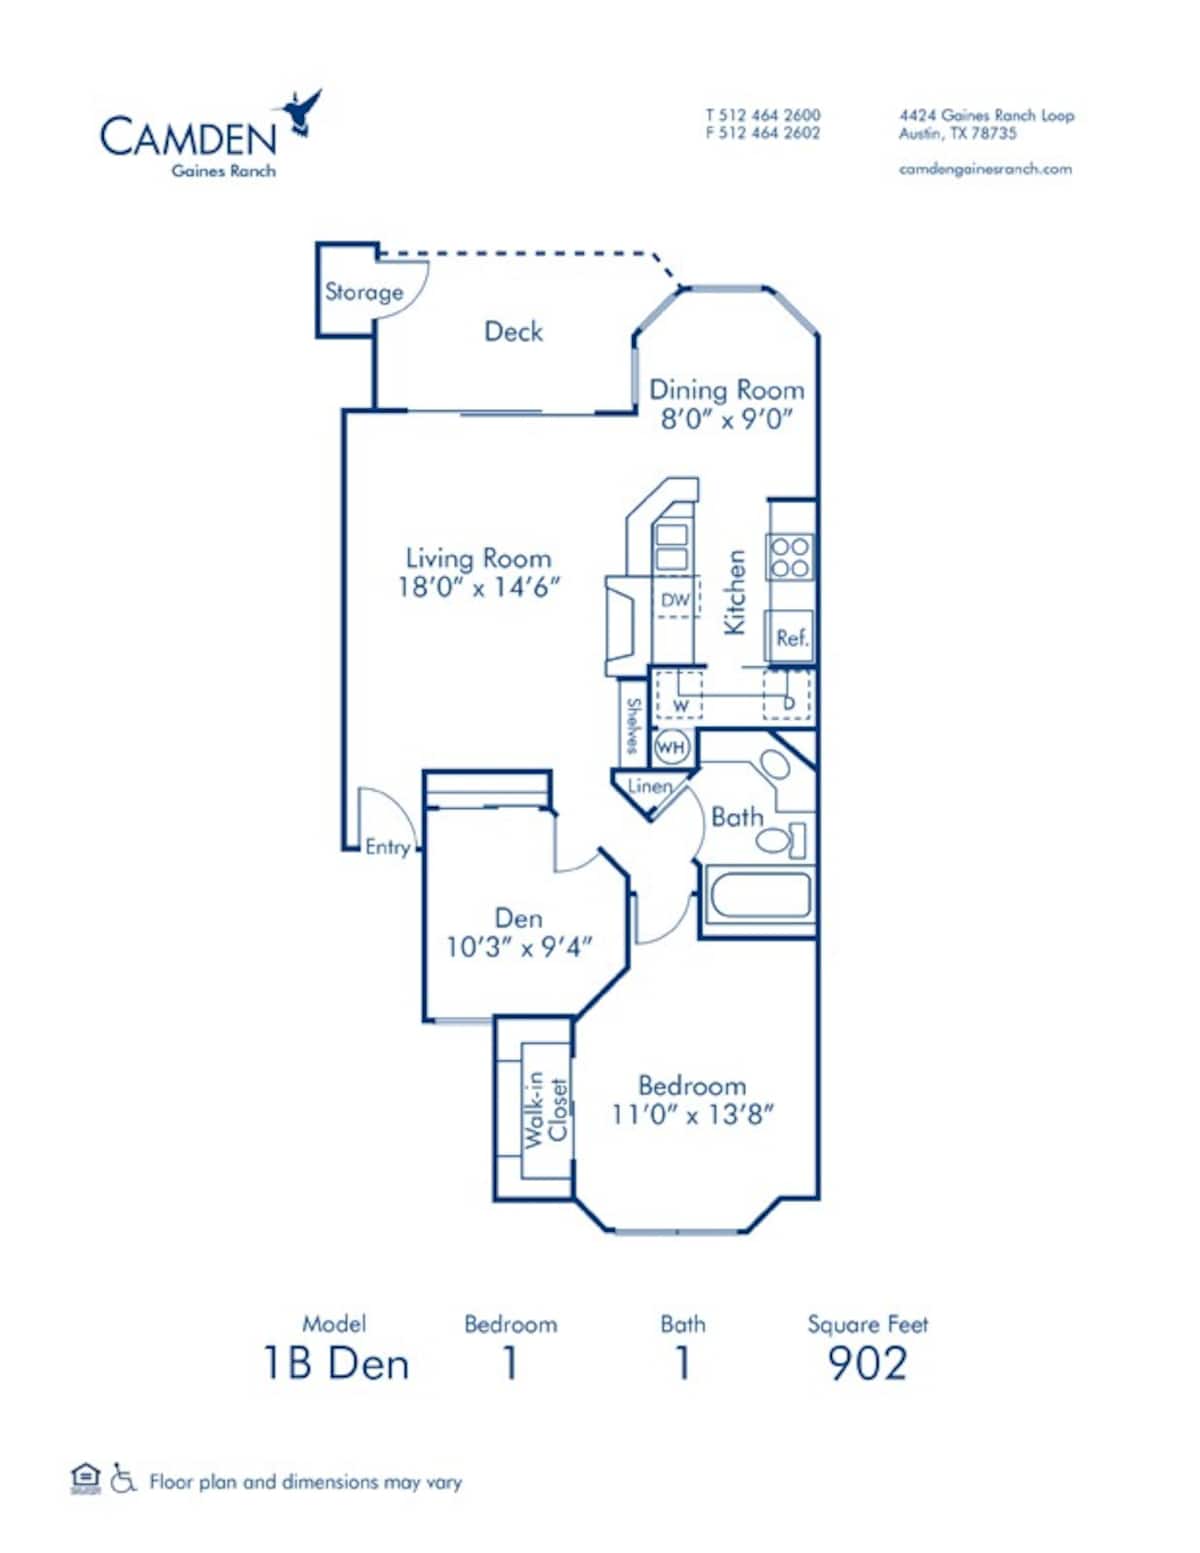 Floorplan diagram for 1B Den, showing 1 bedroom